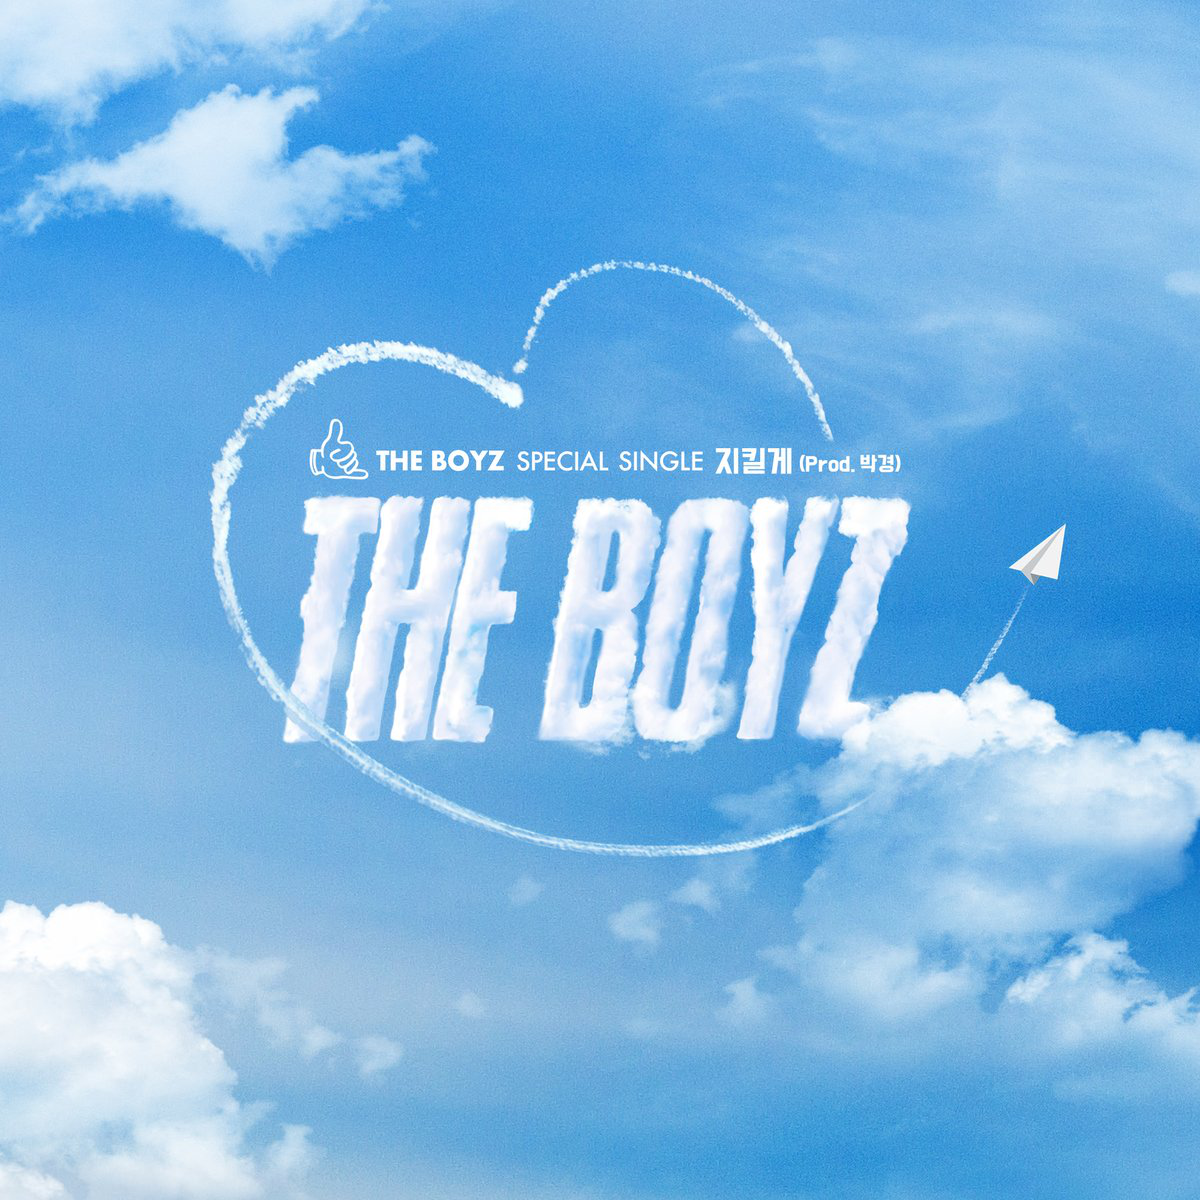 The Boyz the B family logo emblem - The Boyz - Pin | TeePublic